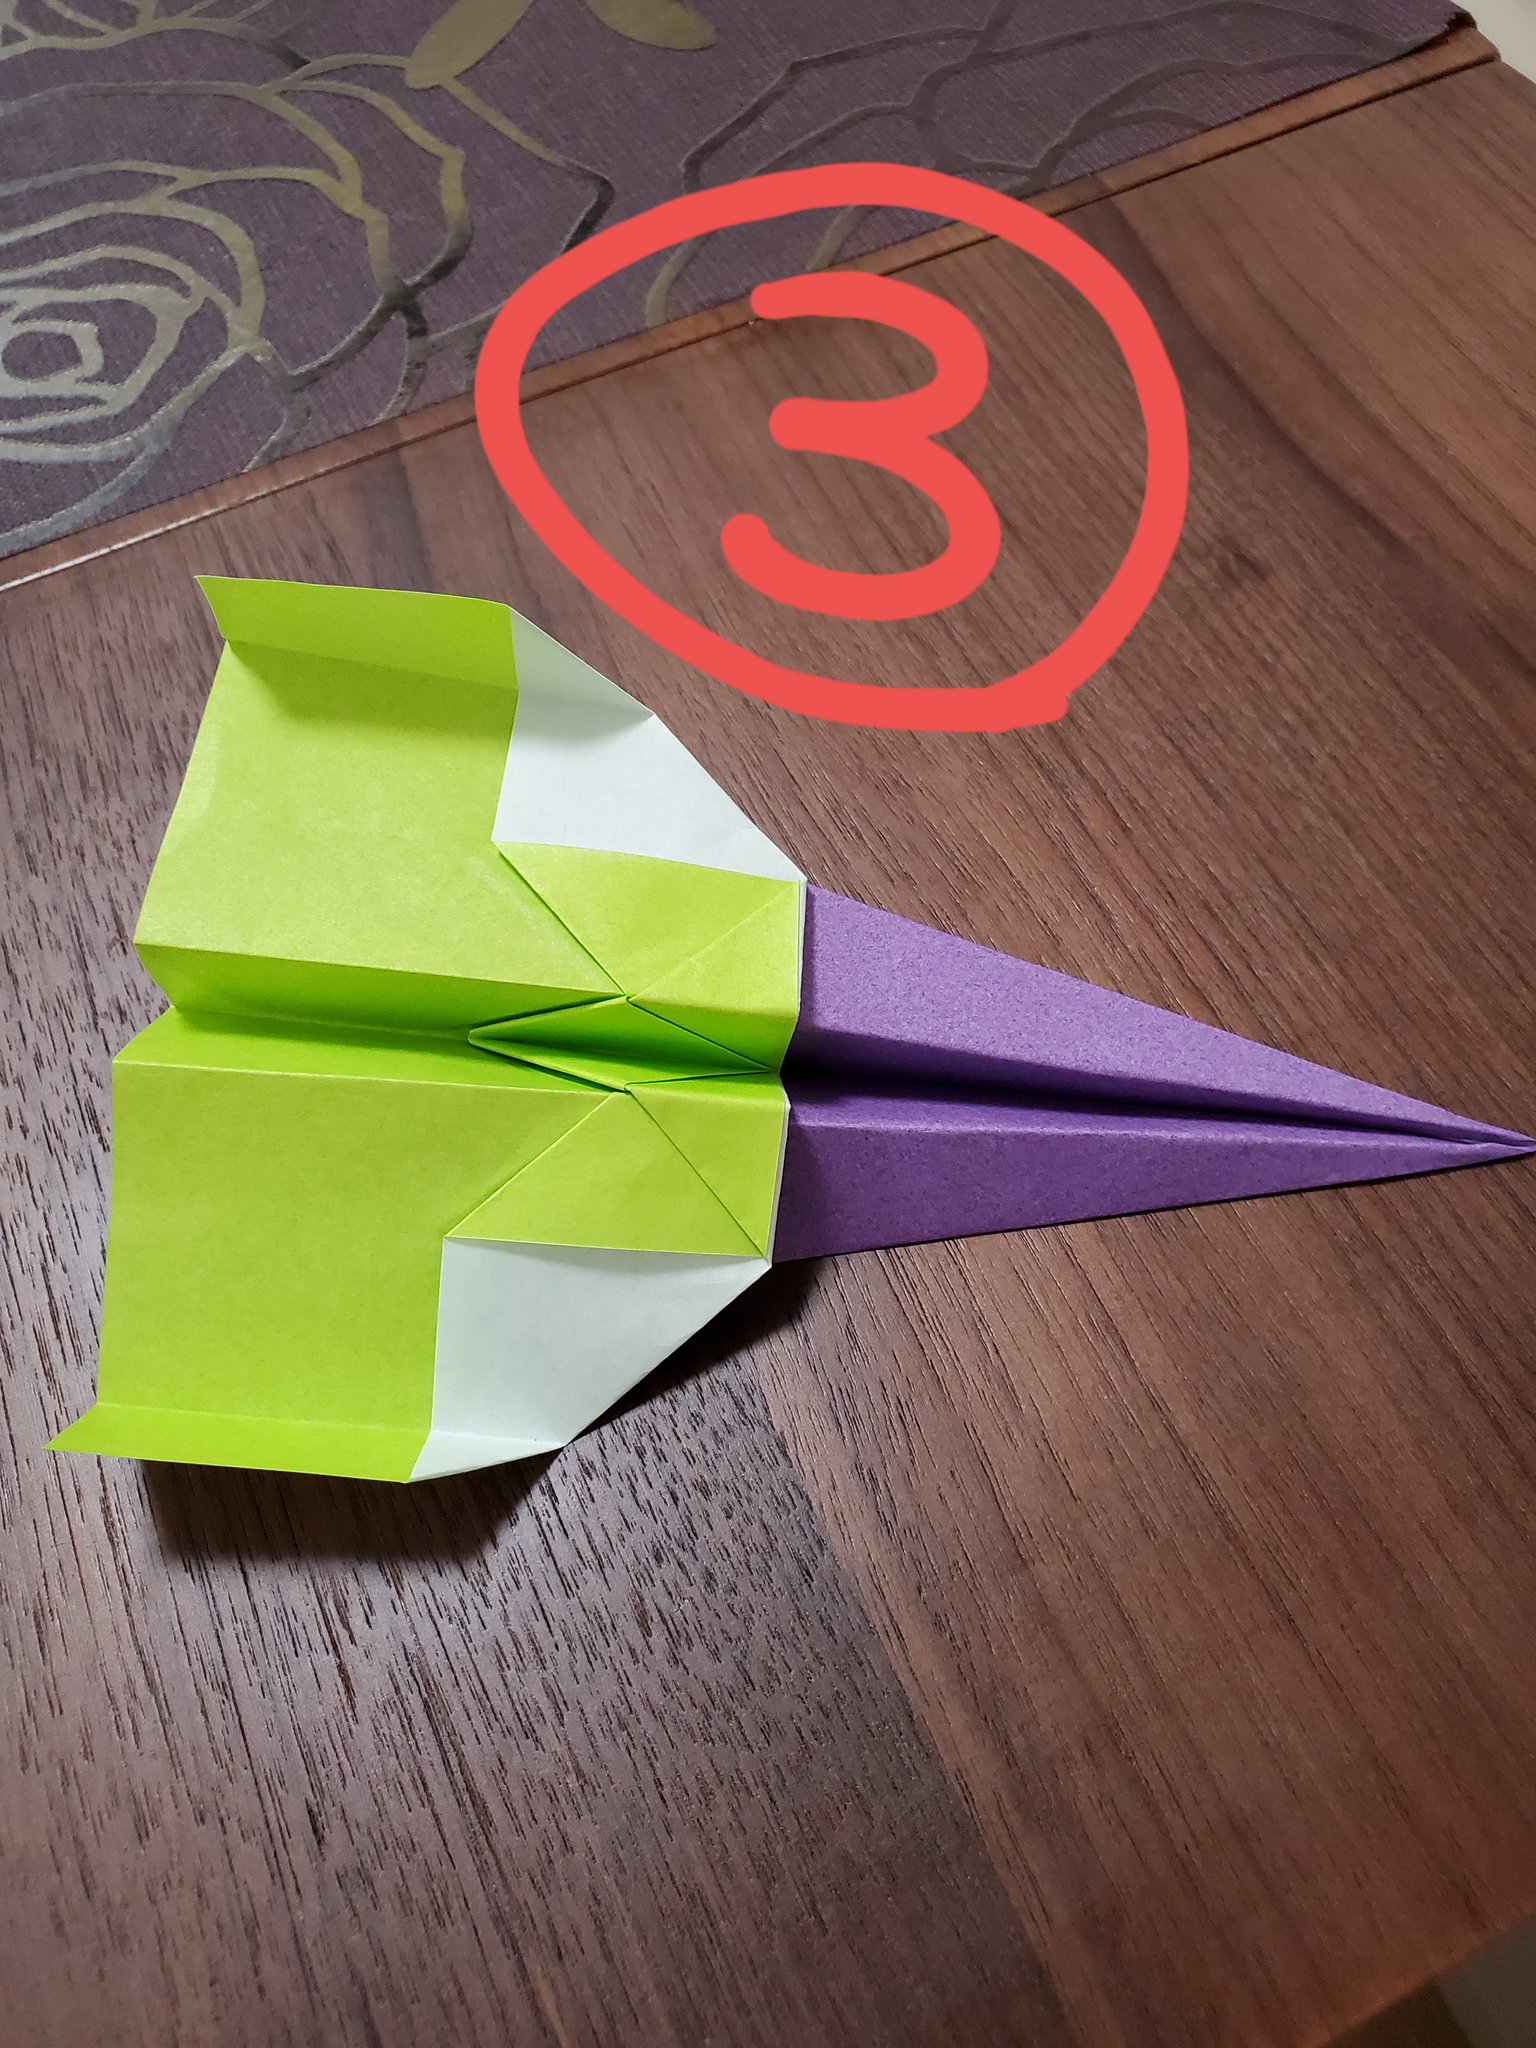 井澤秋乃 囲碁棋士 息子が紙飛行機に興味を持ったのでyoutubeで学んで実践 普通の紙飛行機 最強の紙飛行機 2つを重ねて ダブル合体だ と喜ぶ息子 さて どれが一番飛ぶでしょうか T Co Tprrqkhoo7 Twitter